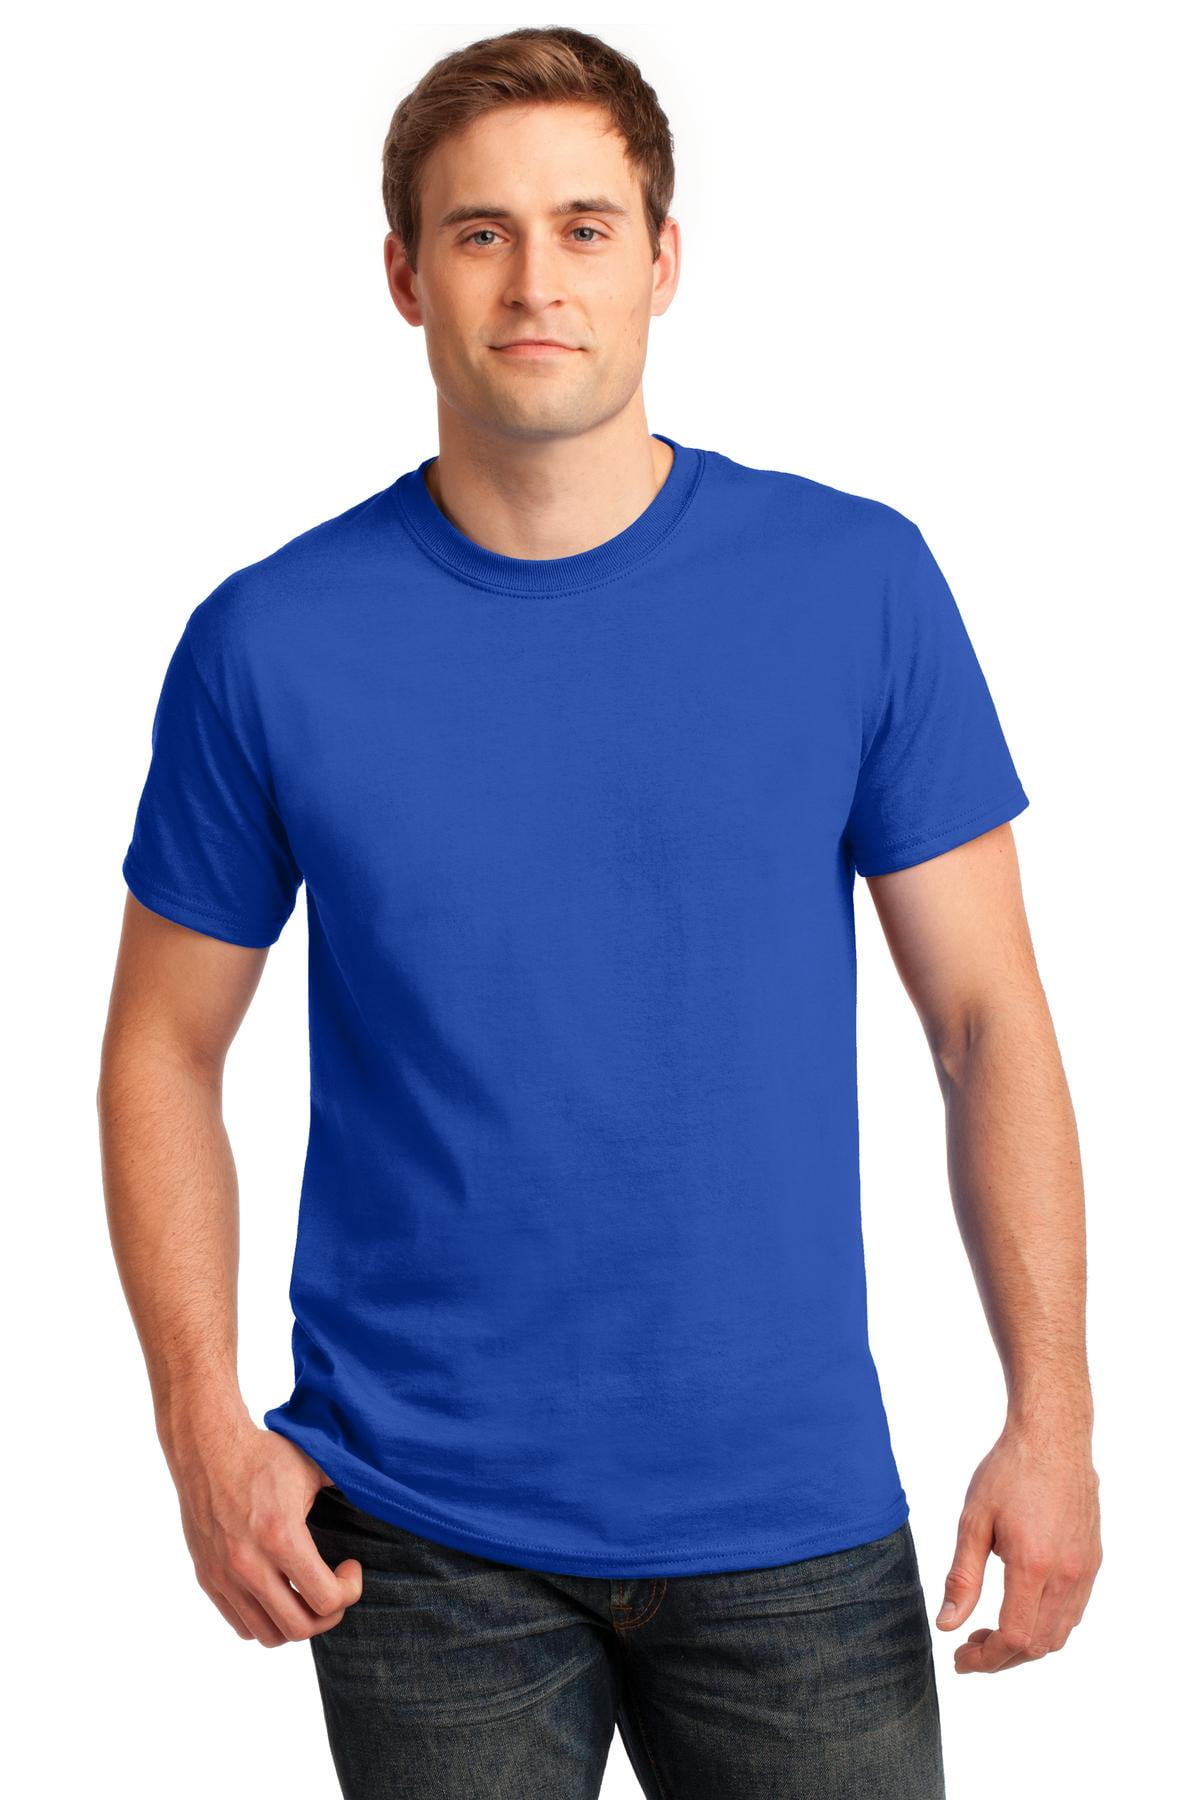 Gildan Men's 100 Percent Cotton Crew Neck T-Shirt. 2000 - Walmart.com